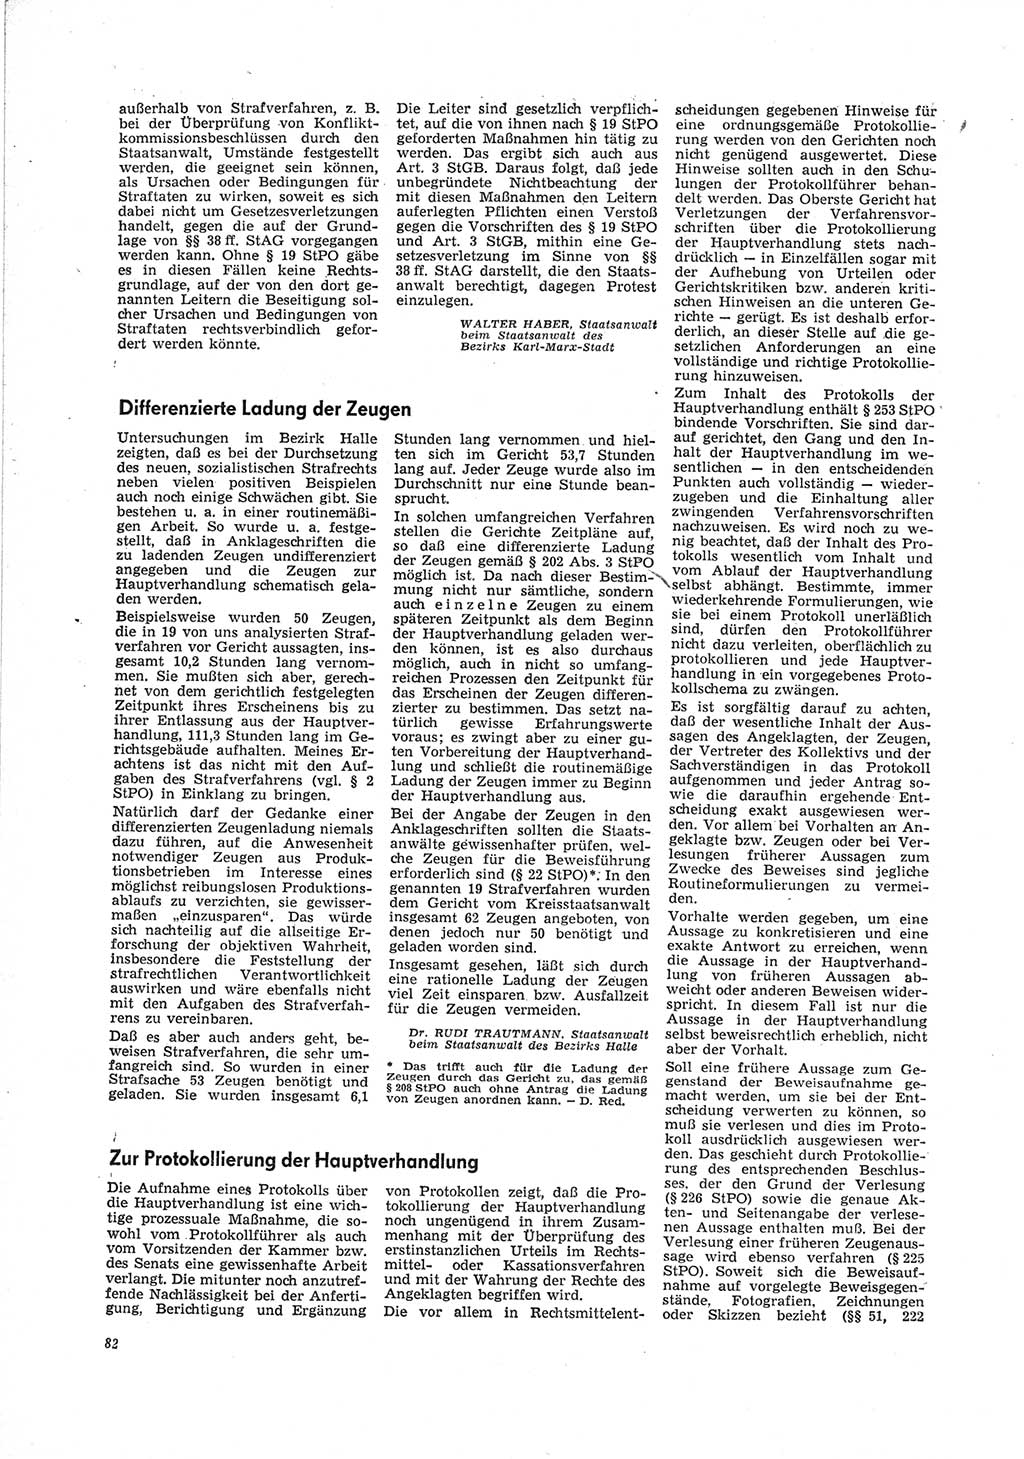 Neue Justiz (NJ), Zeitschrift für Recht und Rechtswissenschaft [Deutsche Demokratische Republik (DDR)], 23. Jahrgang 1969, Seite 82 (NJ DDR 1969, S. 82)